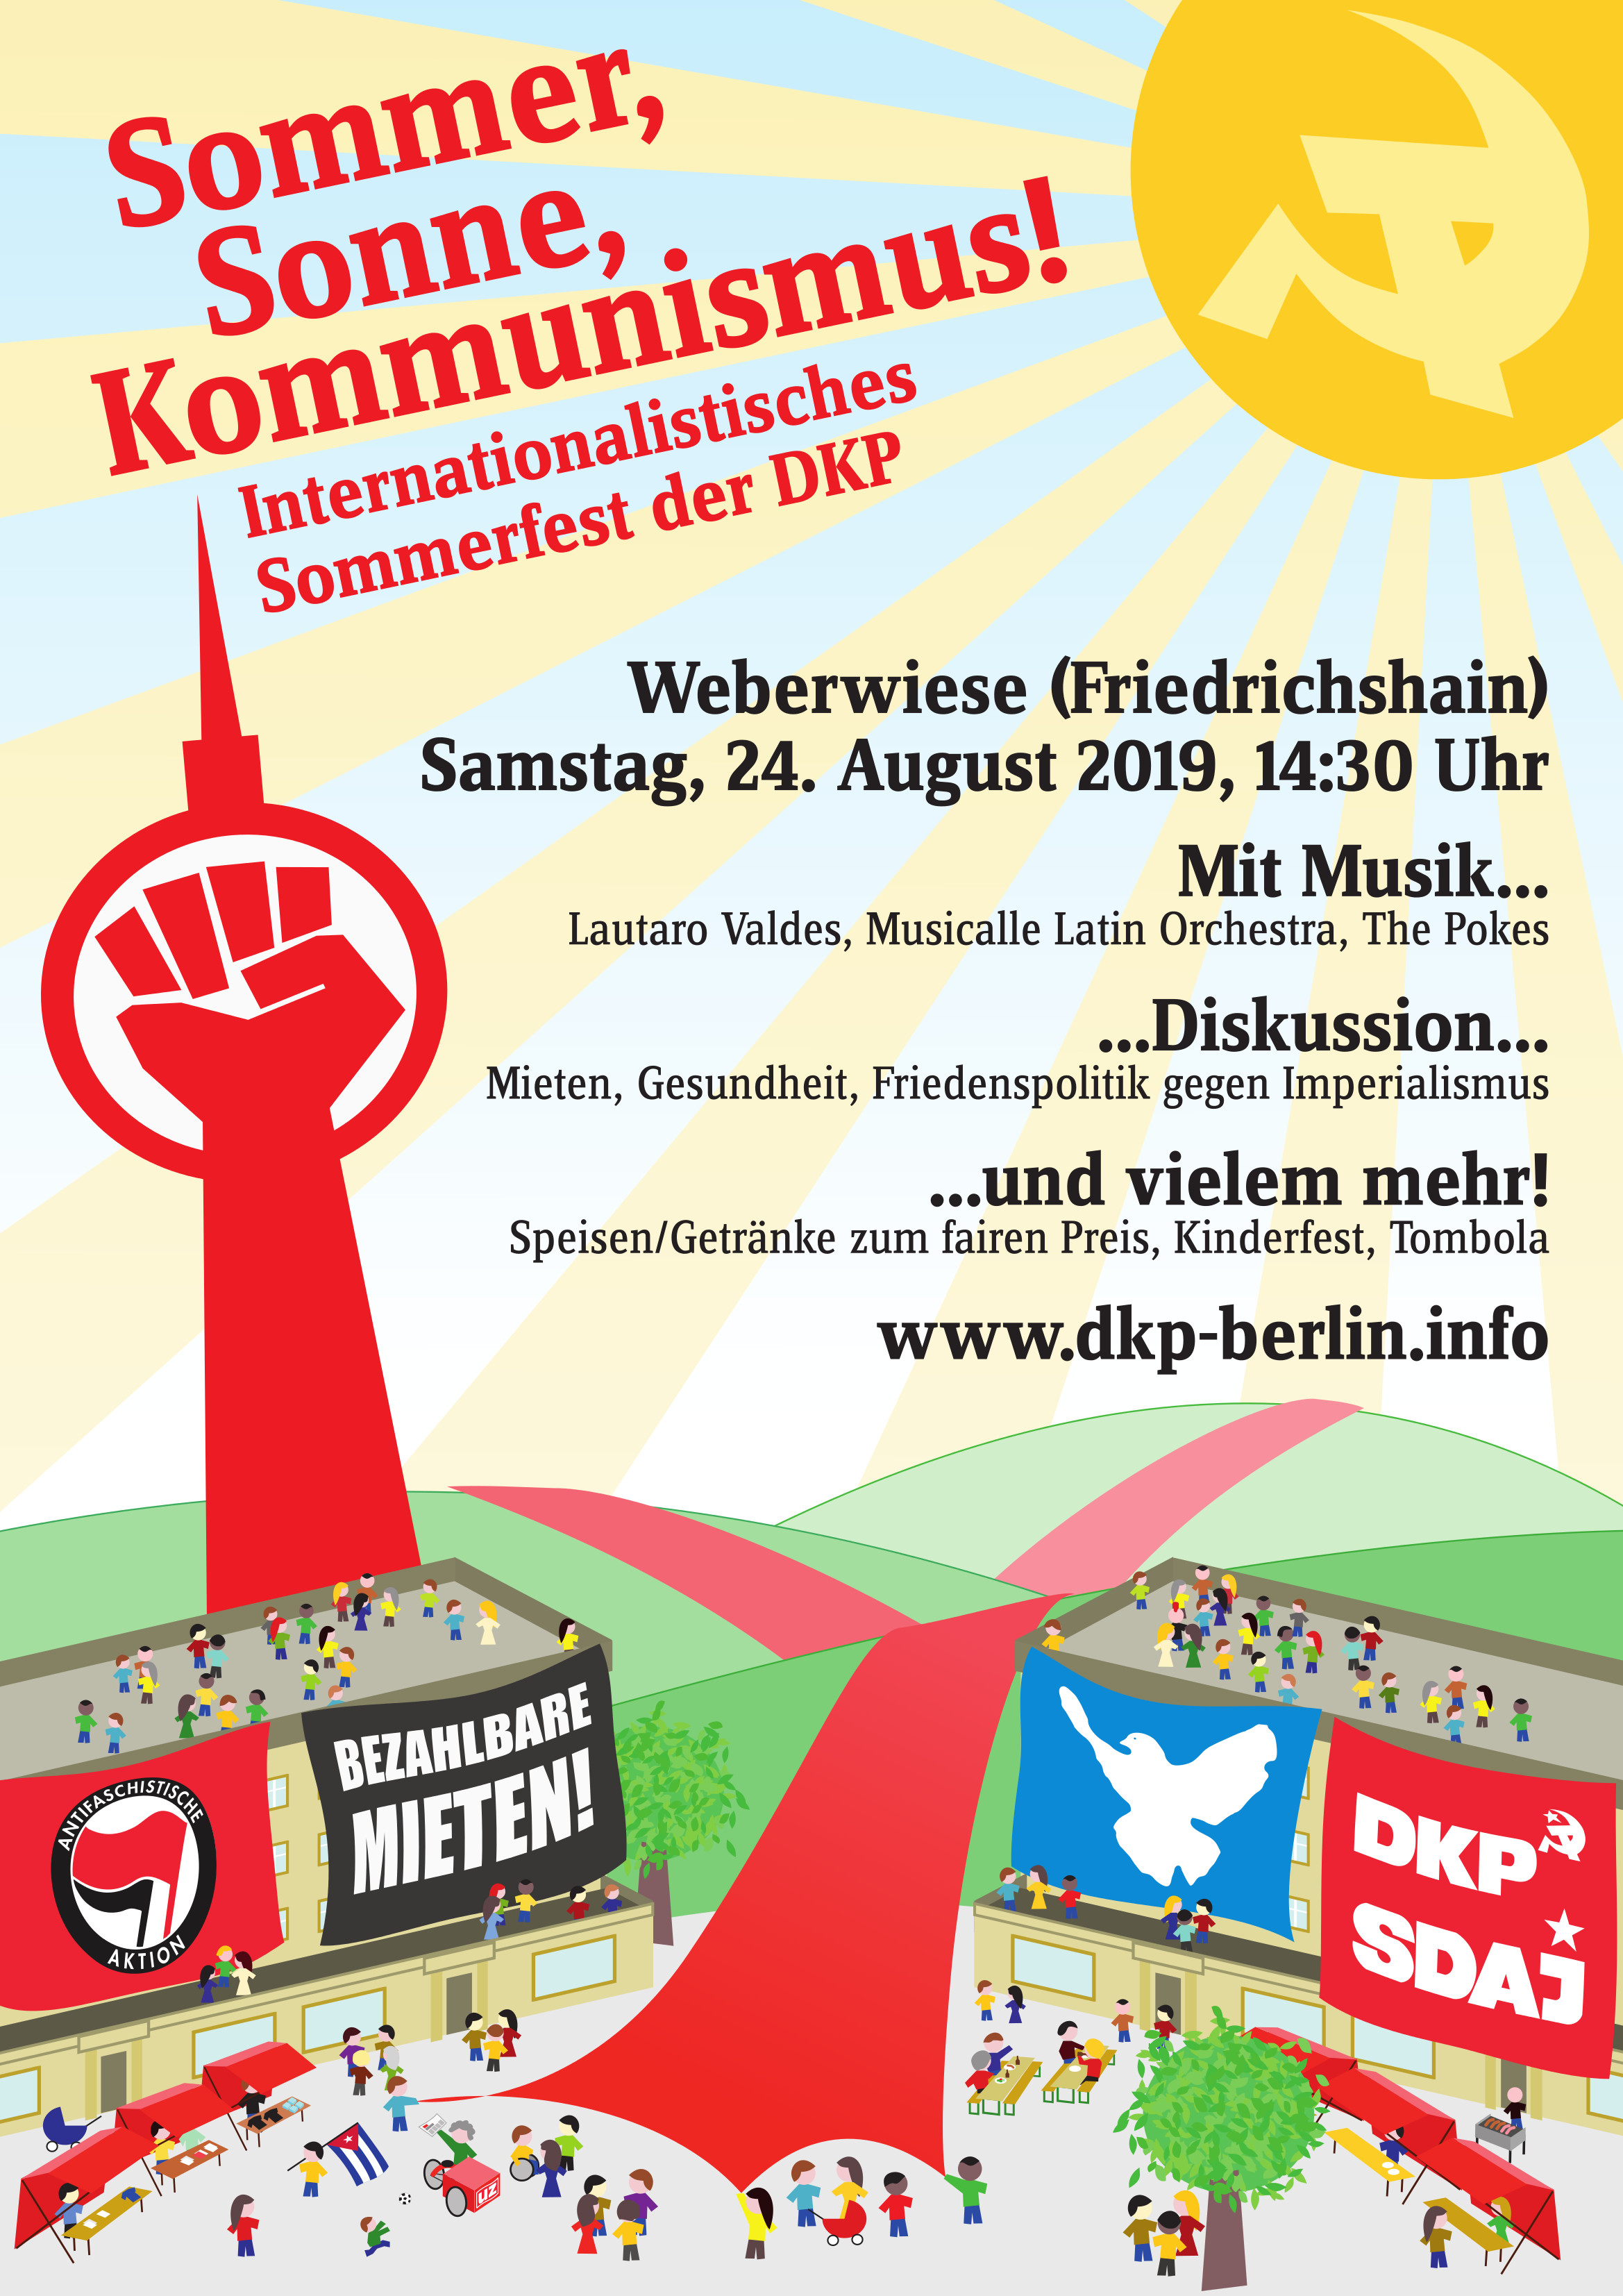 Internationalistisches DKP-Sommerfest